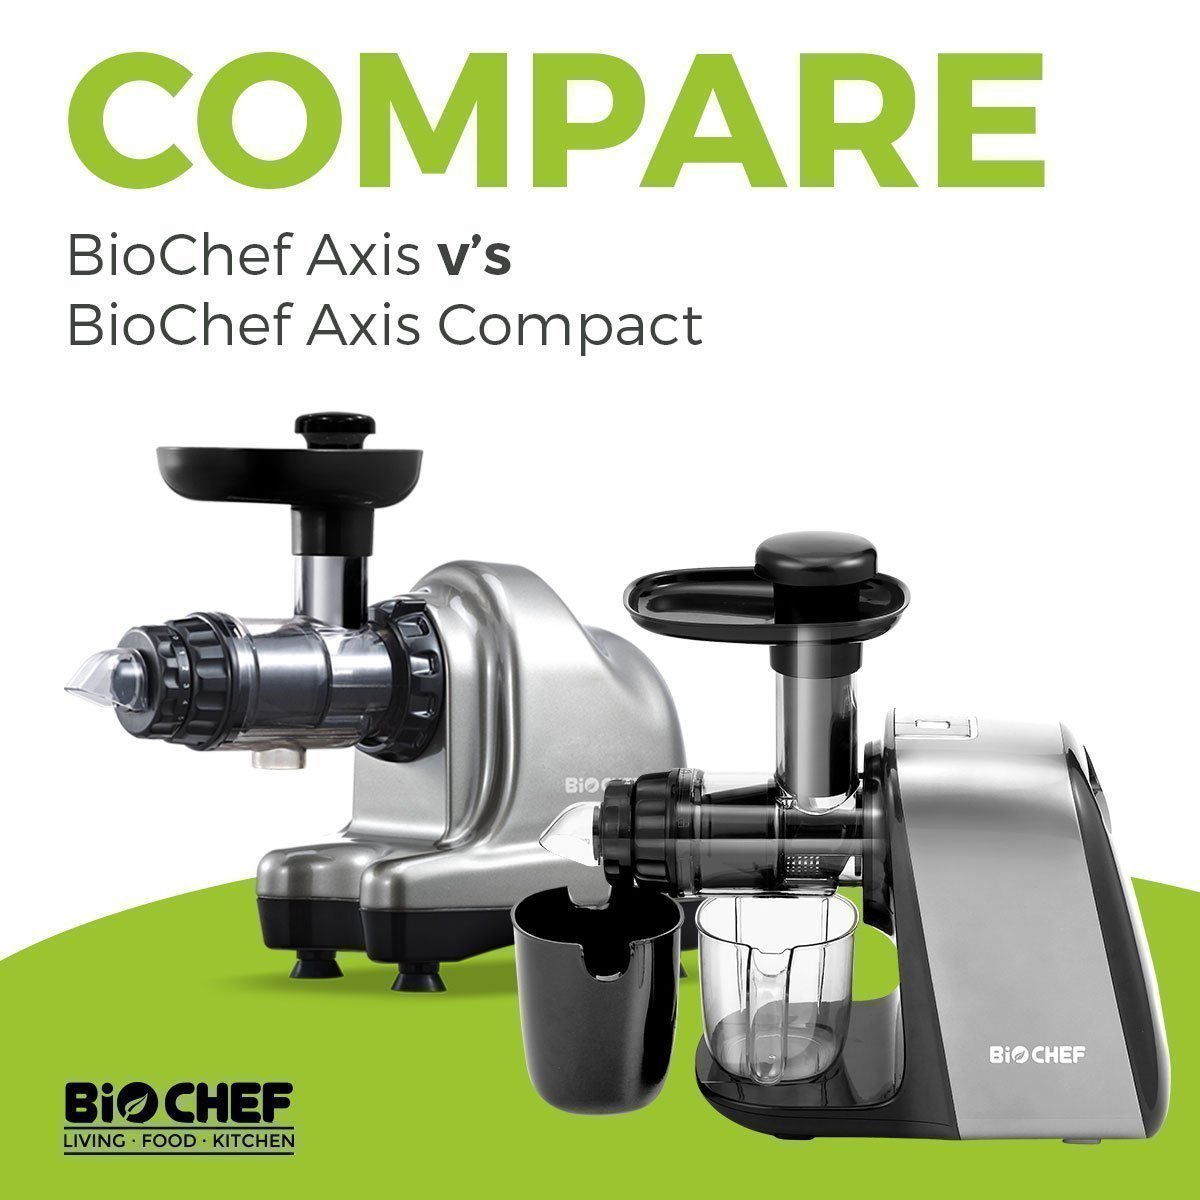 Compare: BioChef Axis vs BioChef Axis Compact